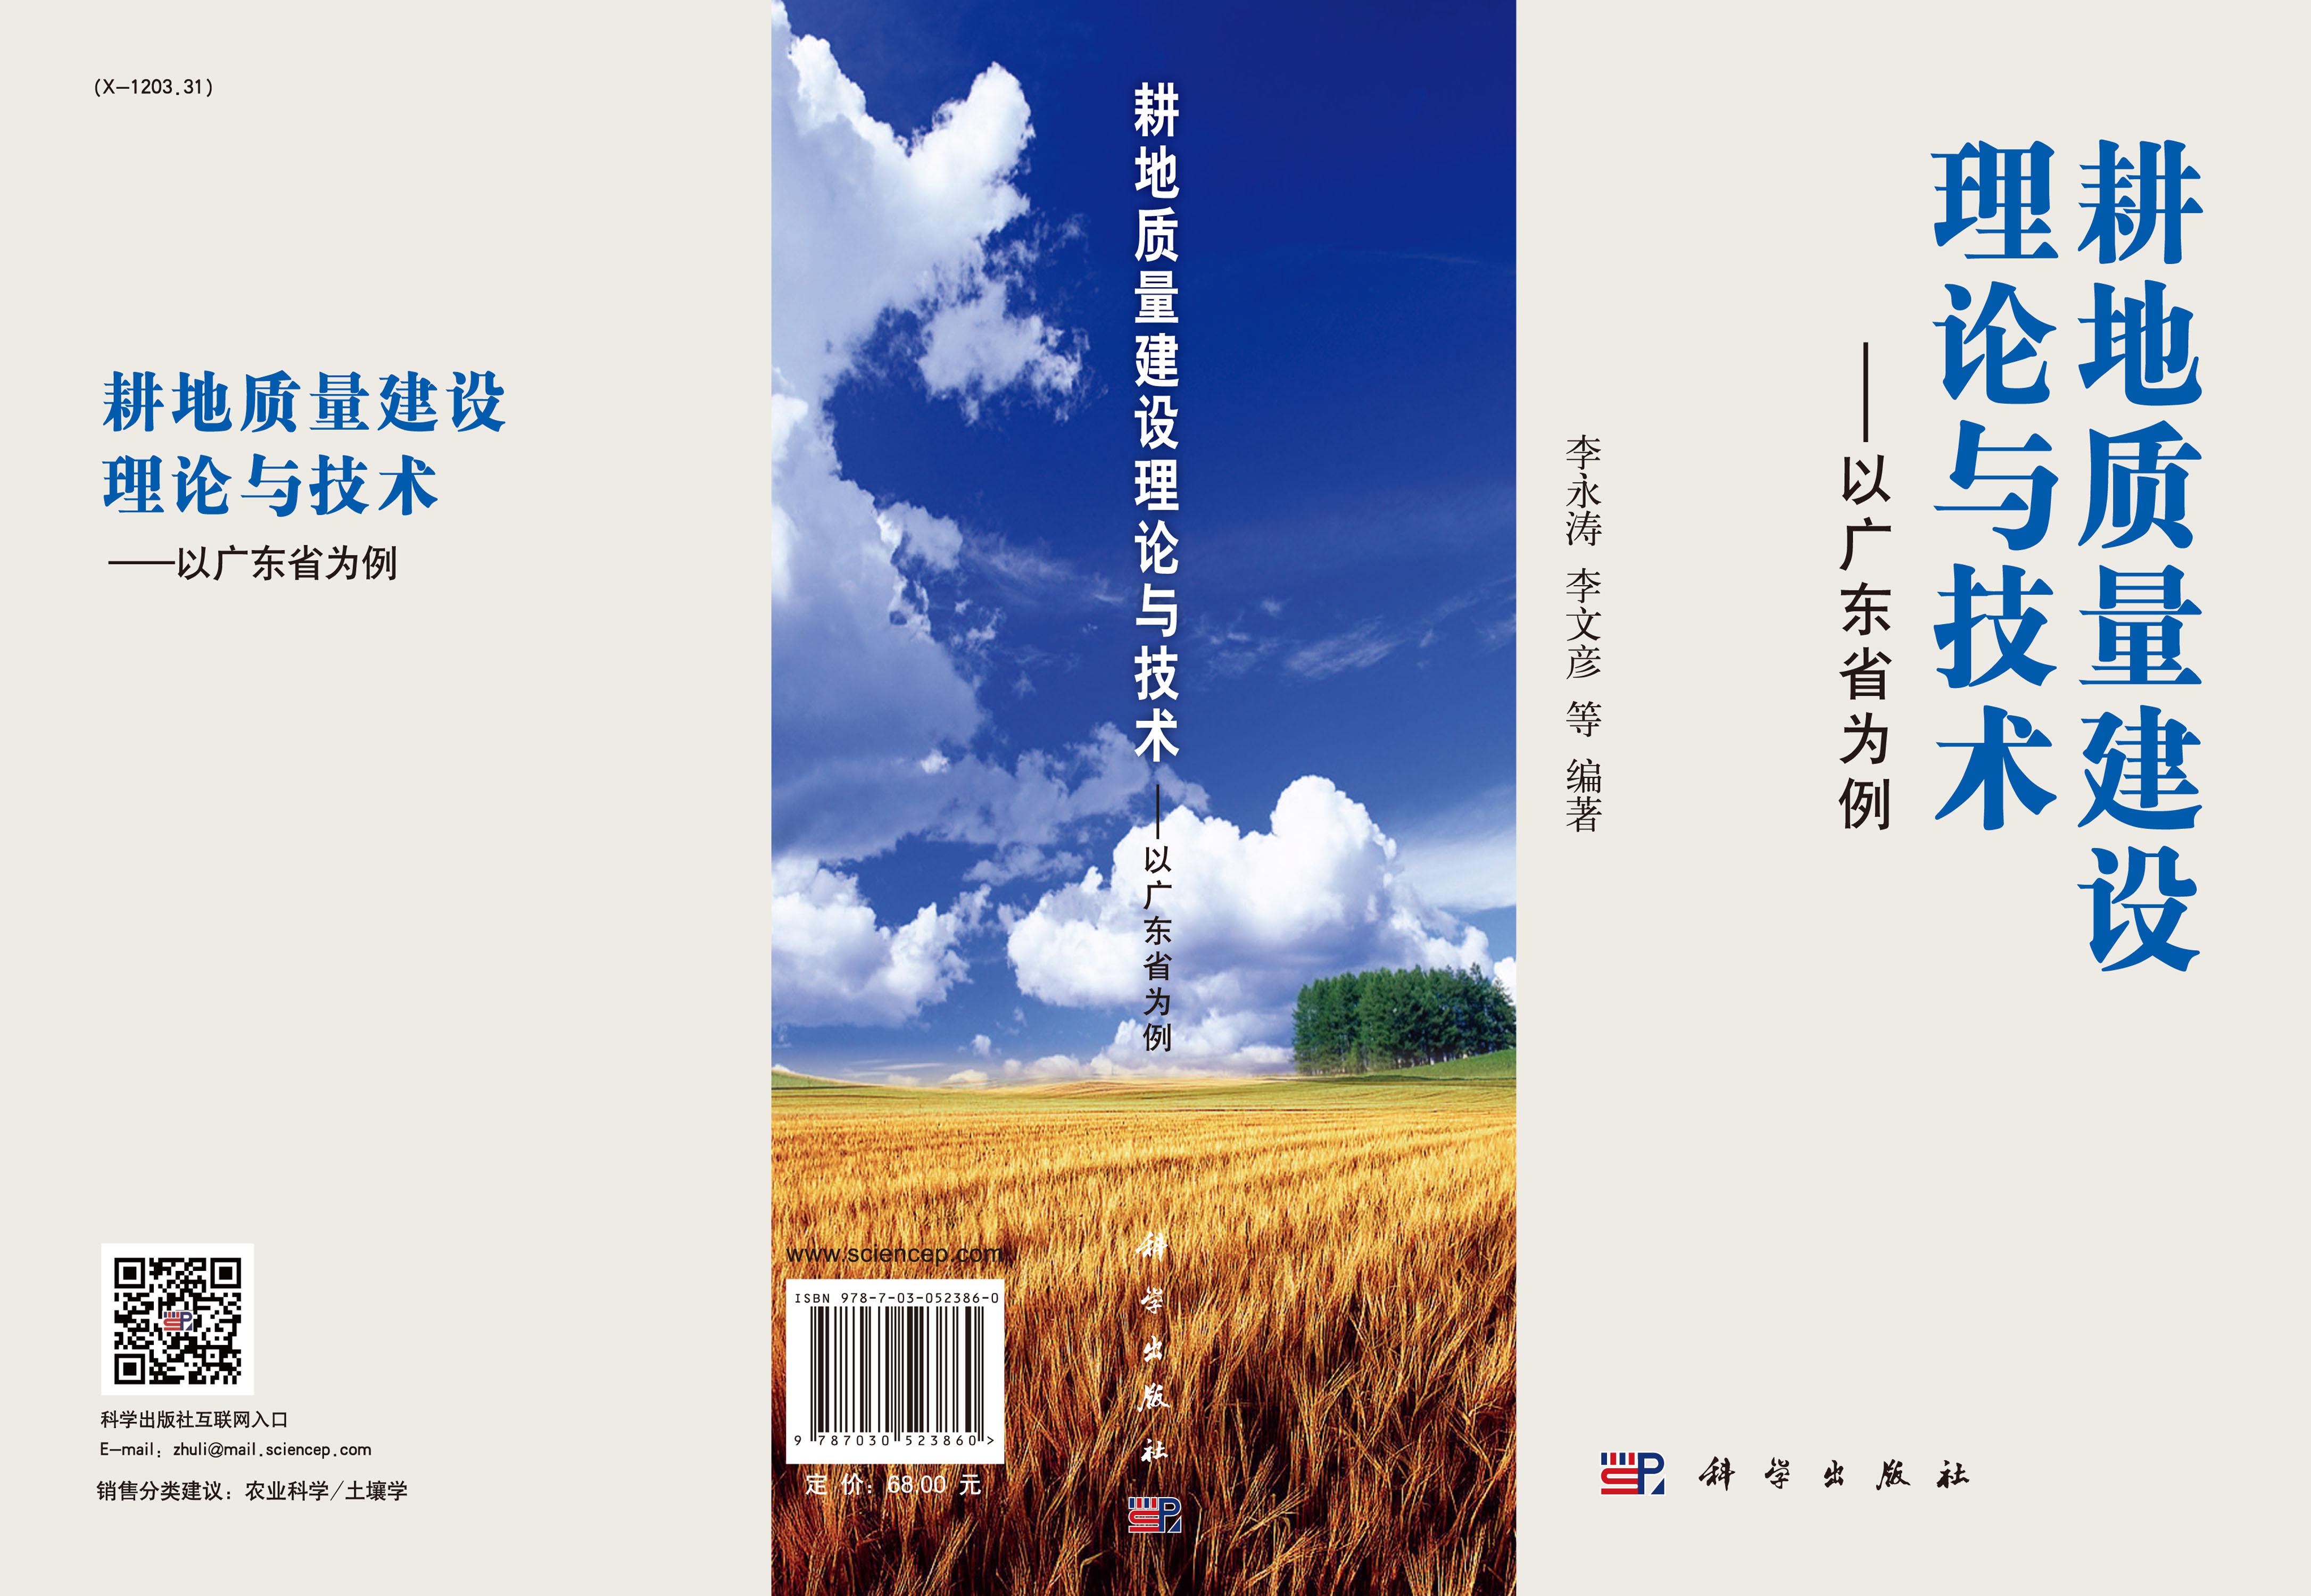 耕地质量建设理论与技术——以广东省为例